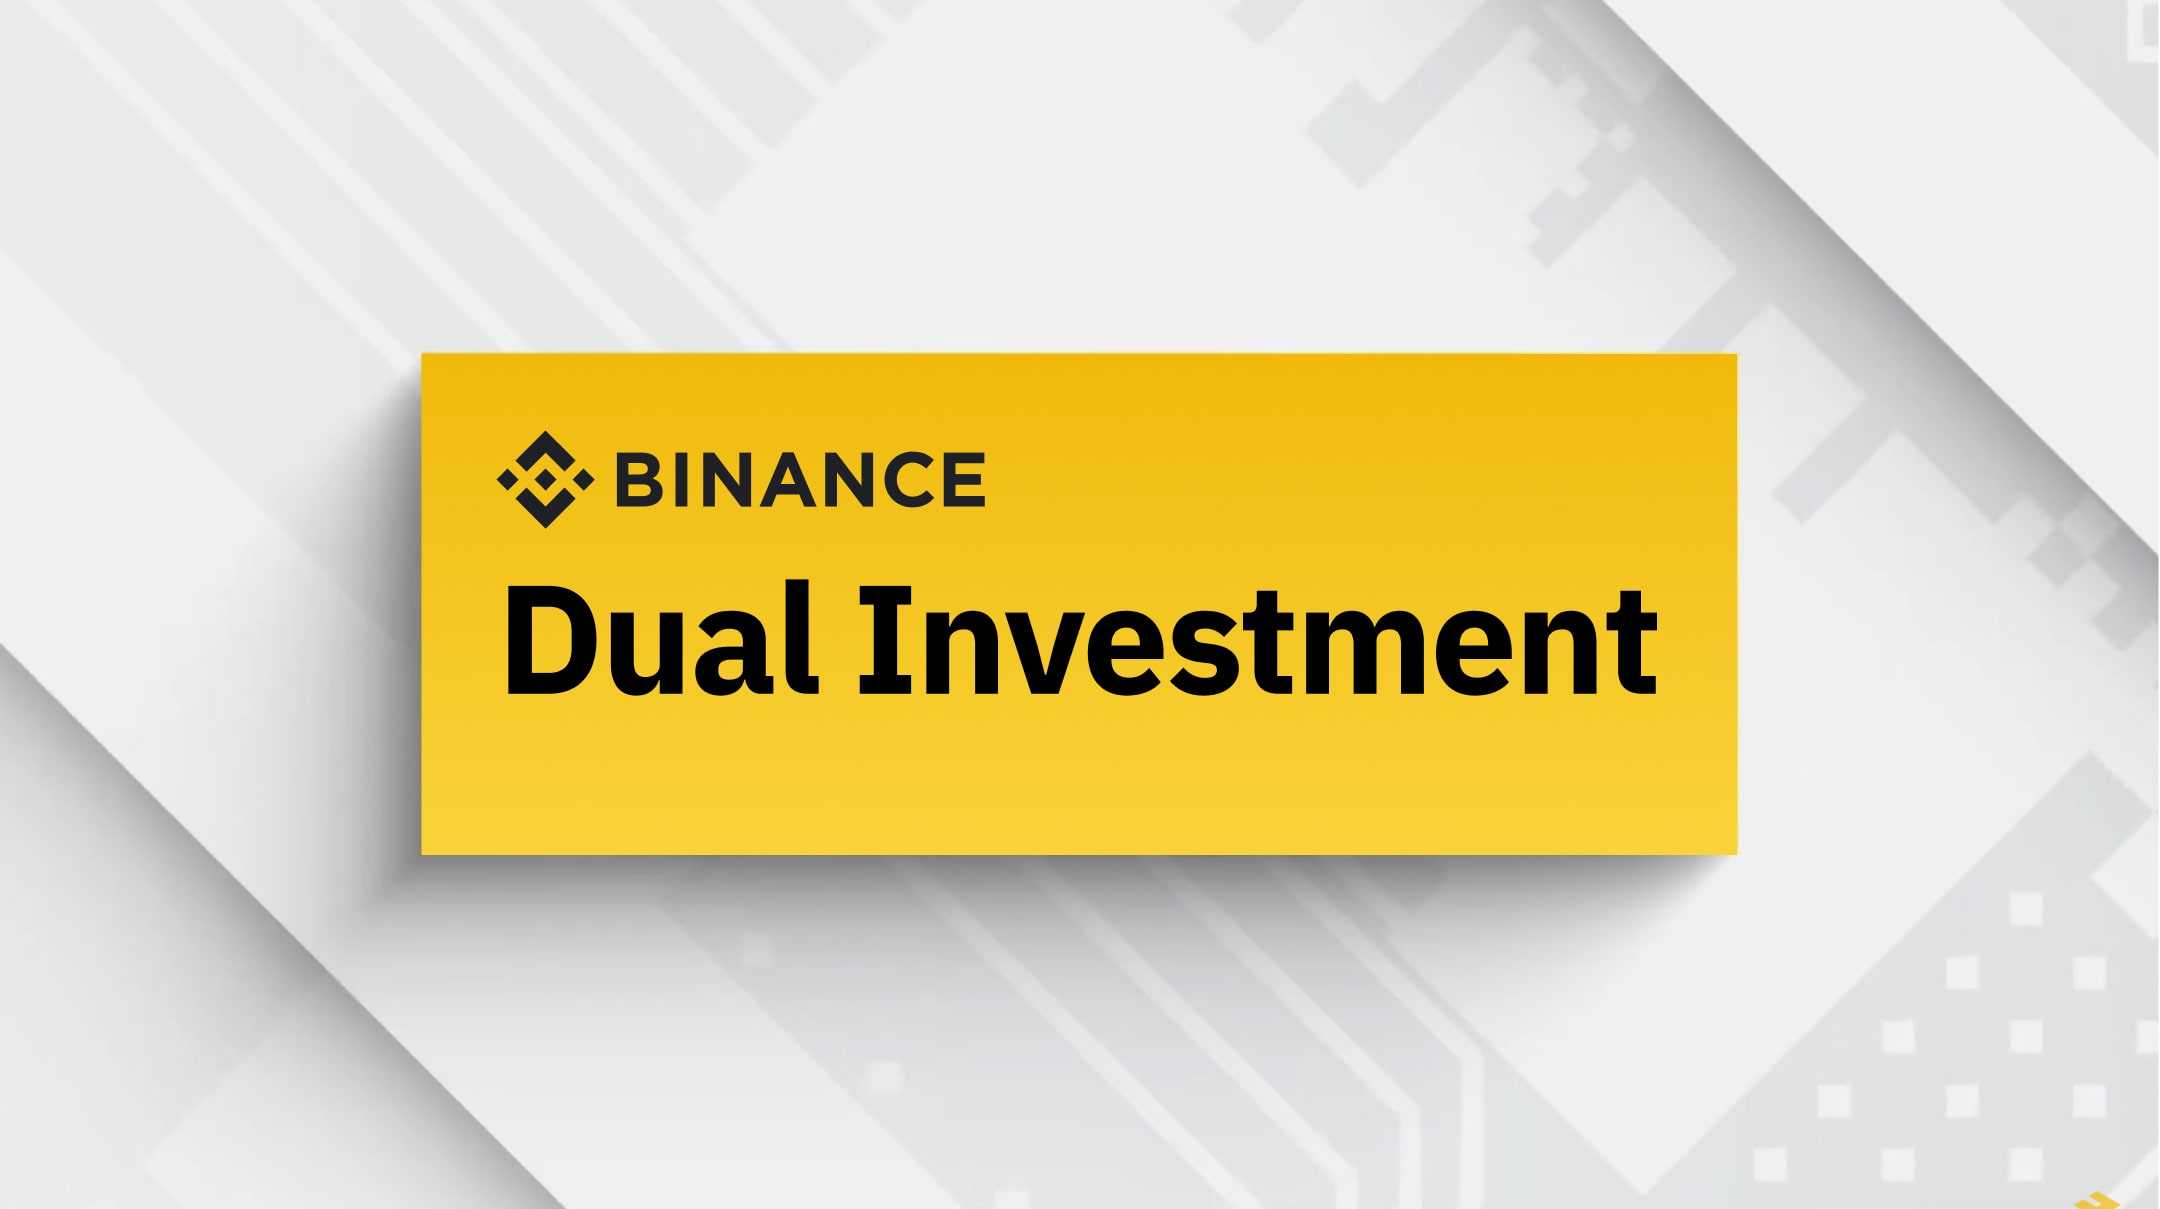 Dual Investment Binance (Đầu tư kép) là một sản phẩm đầu tư không đảm bảo vốn gốc